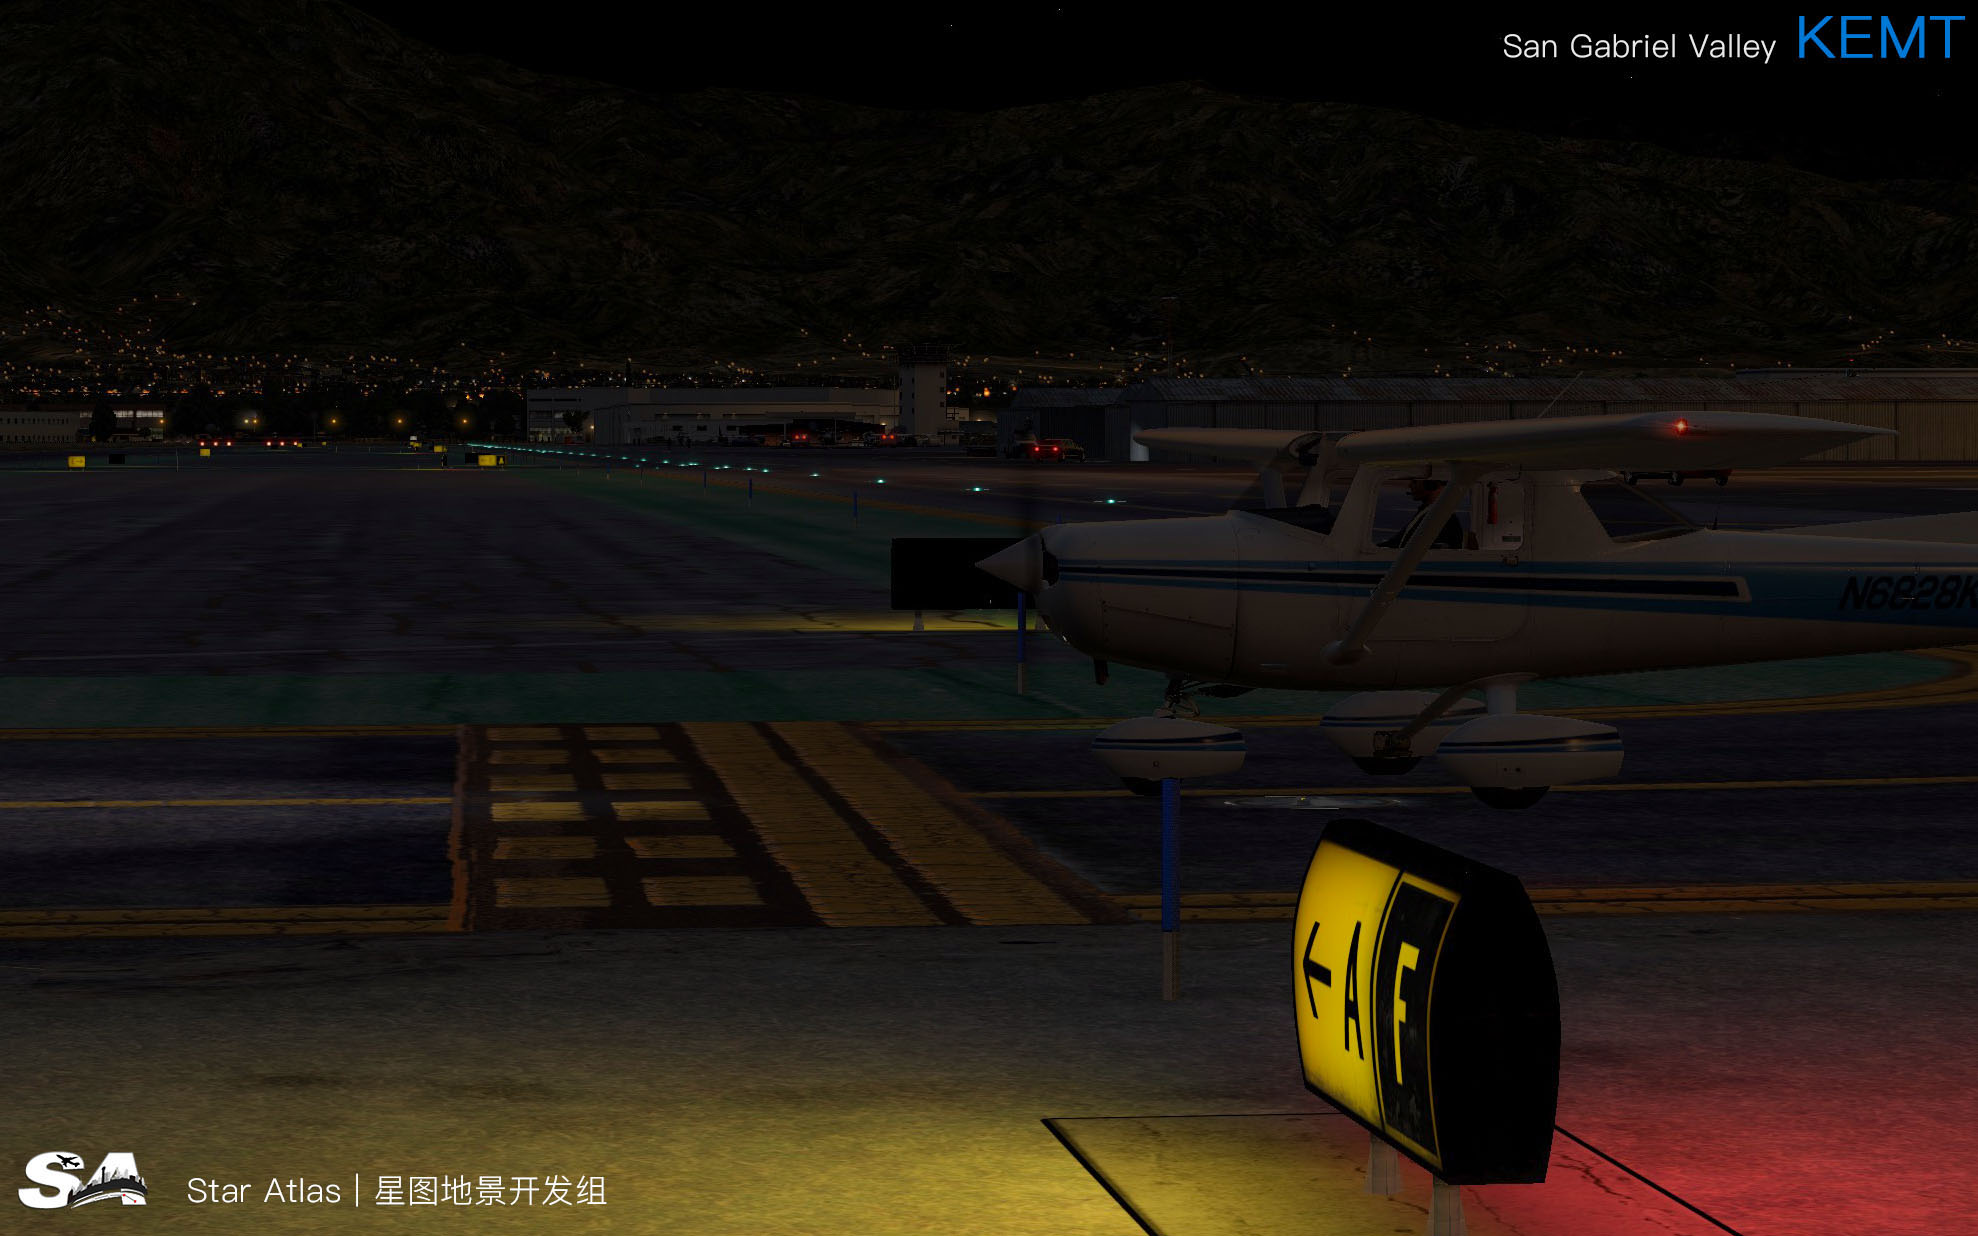 【X-Plane】KEMT-圣盖博谷机场 HD 1.0-9861 